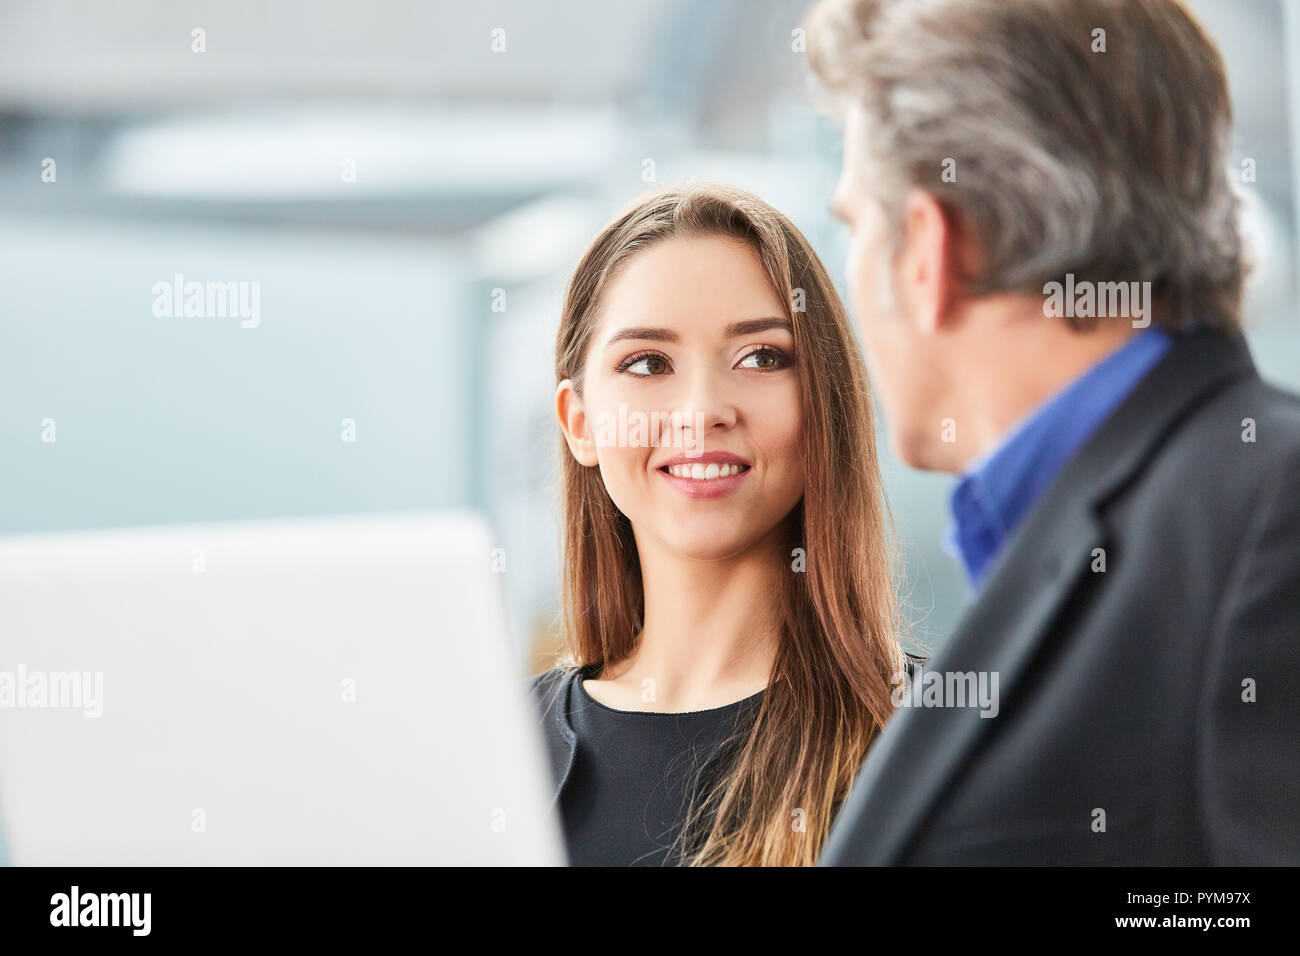 Jeune femme d'affaires parle de son voyage d'affaires avec une collègue dans le terminal de l'aéroport Banque D'Images